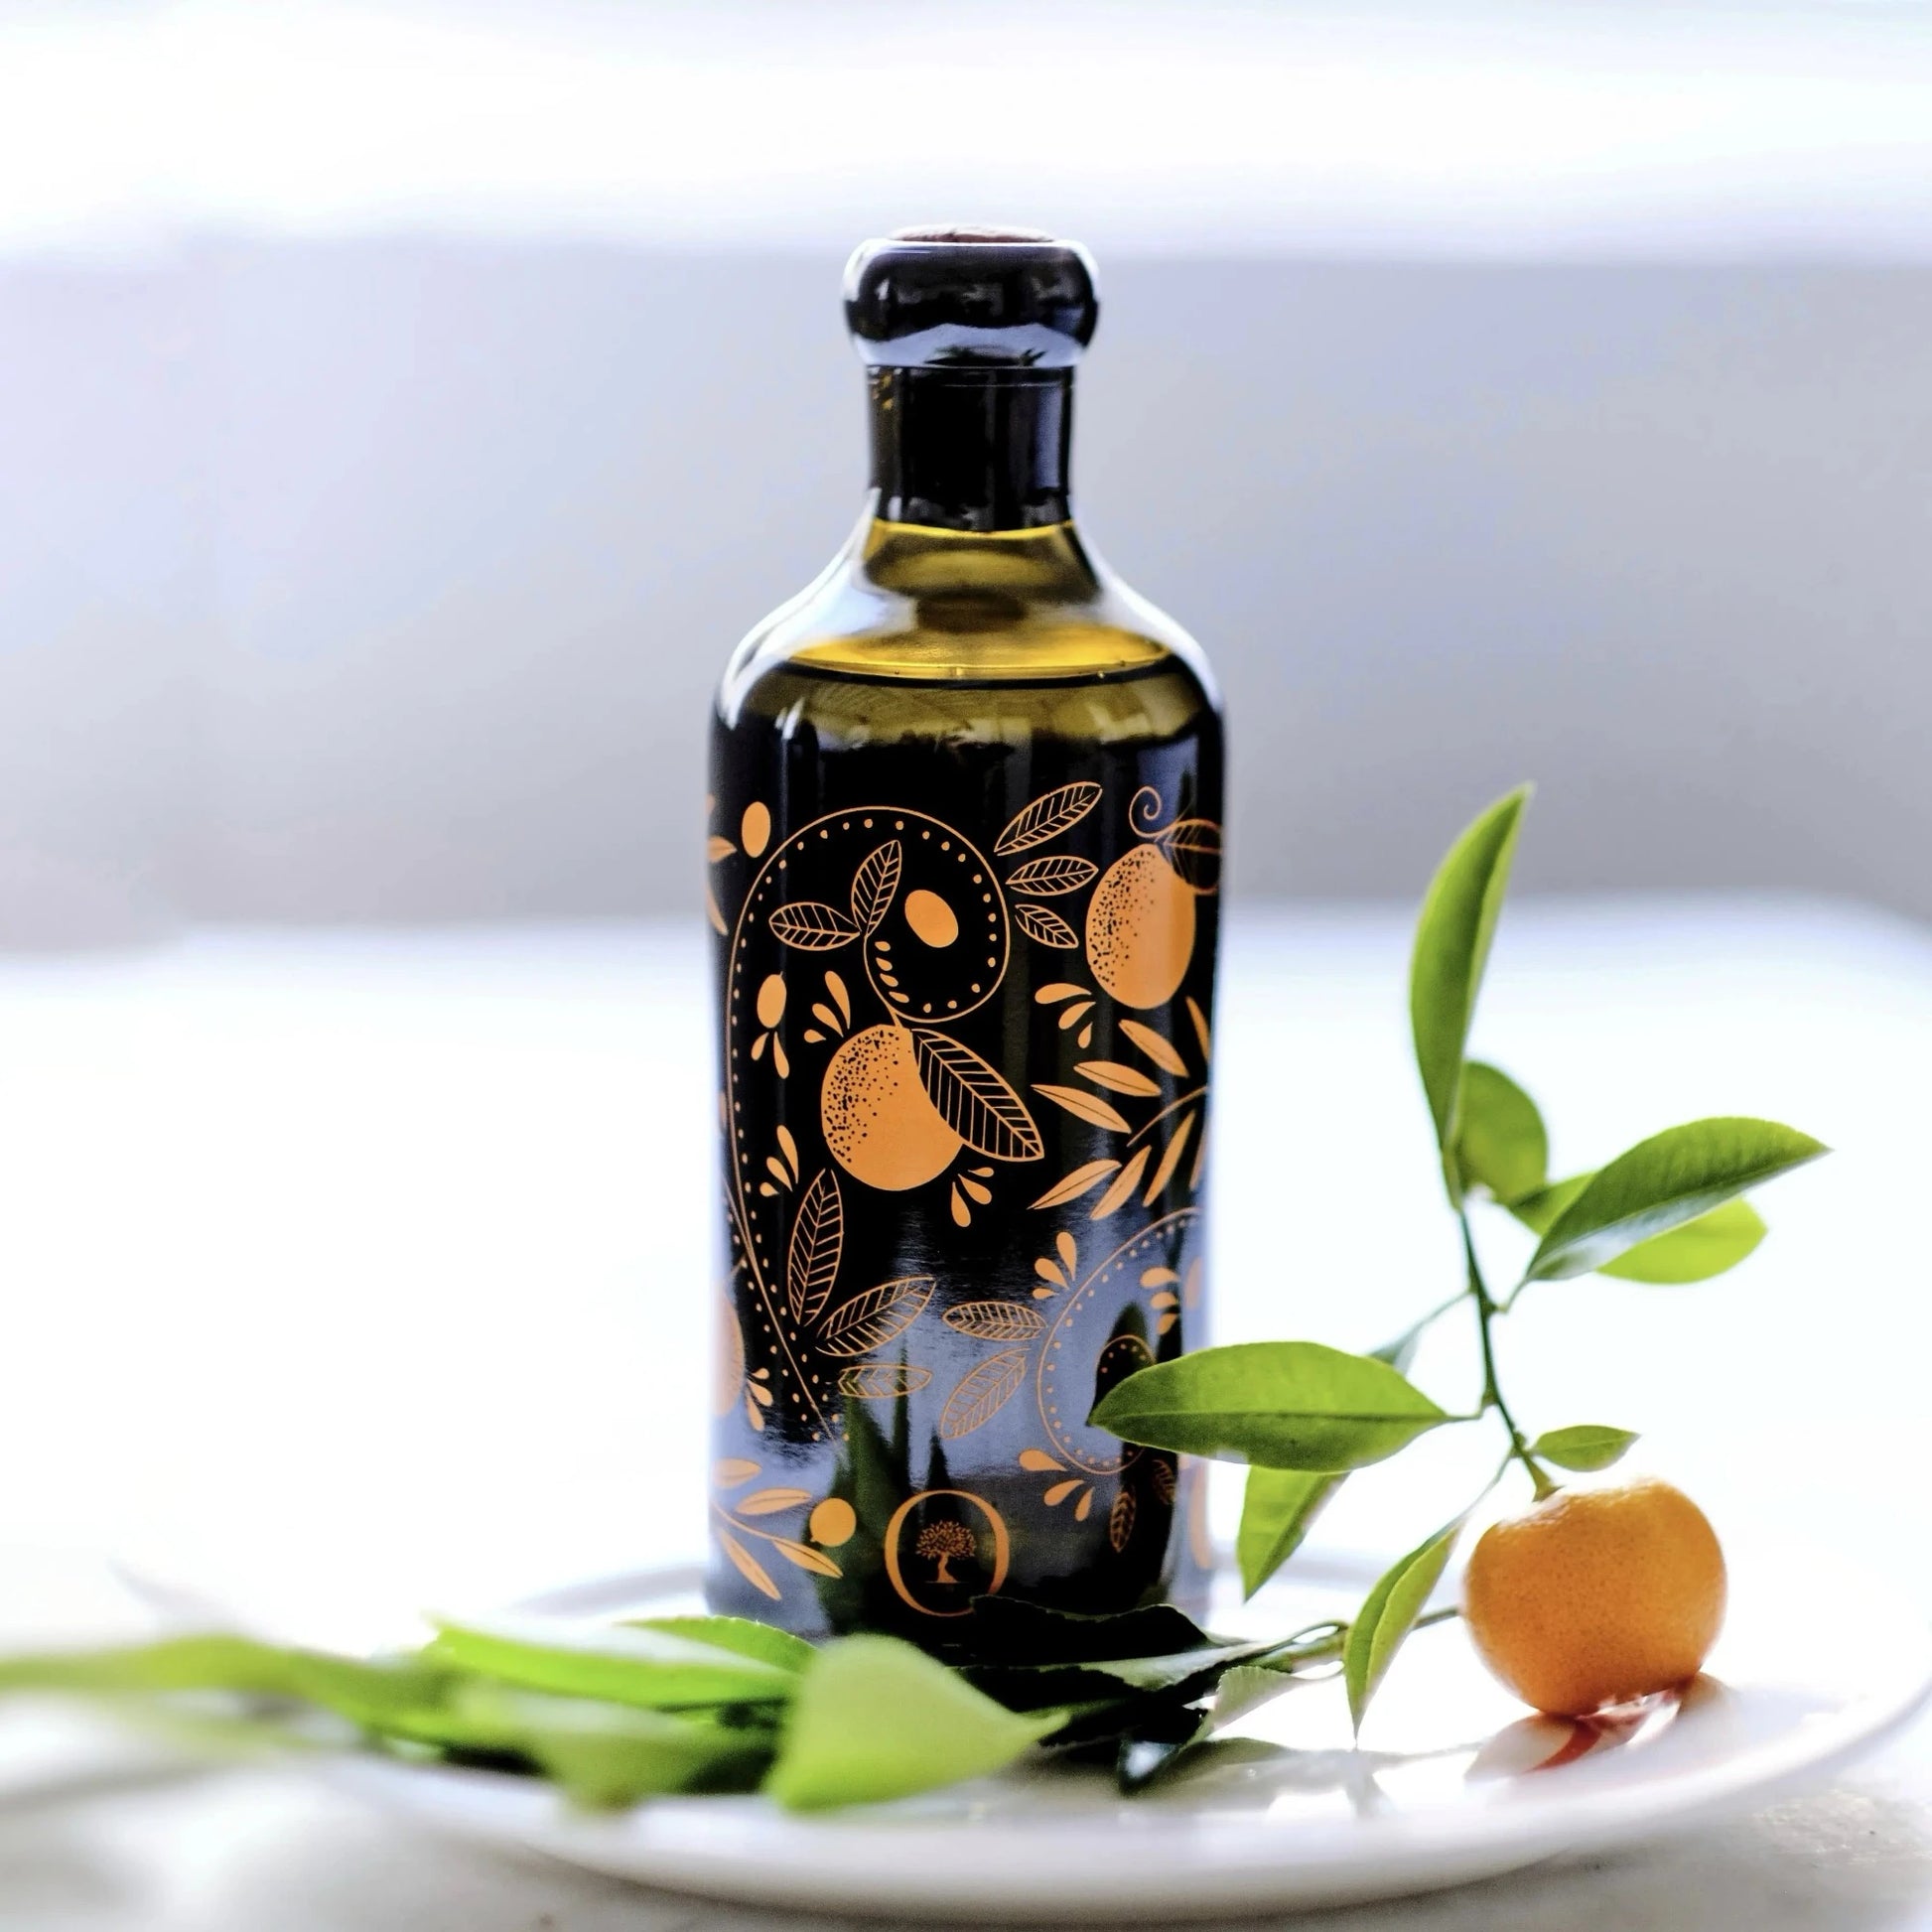  flasche mit olivenöl mit mandarinenaroma, verziert mit orangen mustern, auf einem teller mit einer frischen mandarine und grünen blättern im vordergrund